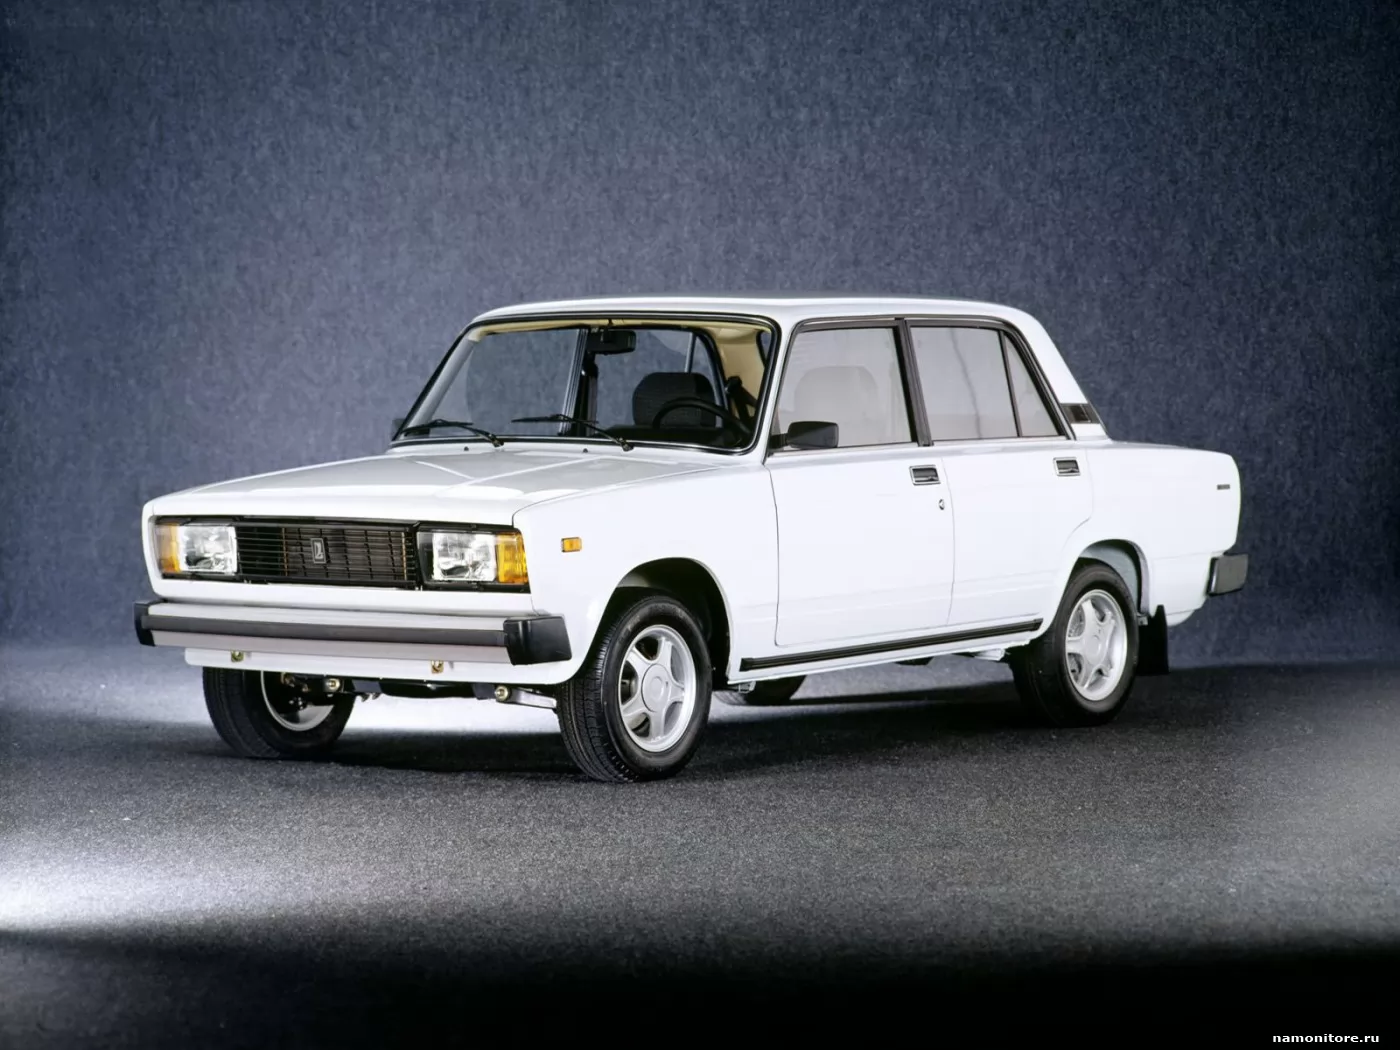 Белый ВАЗ 2105 1980-1992, автомобили, белое, ВАЗ, клипарт, техника х